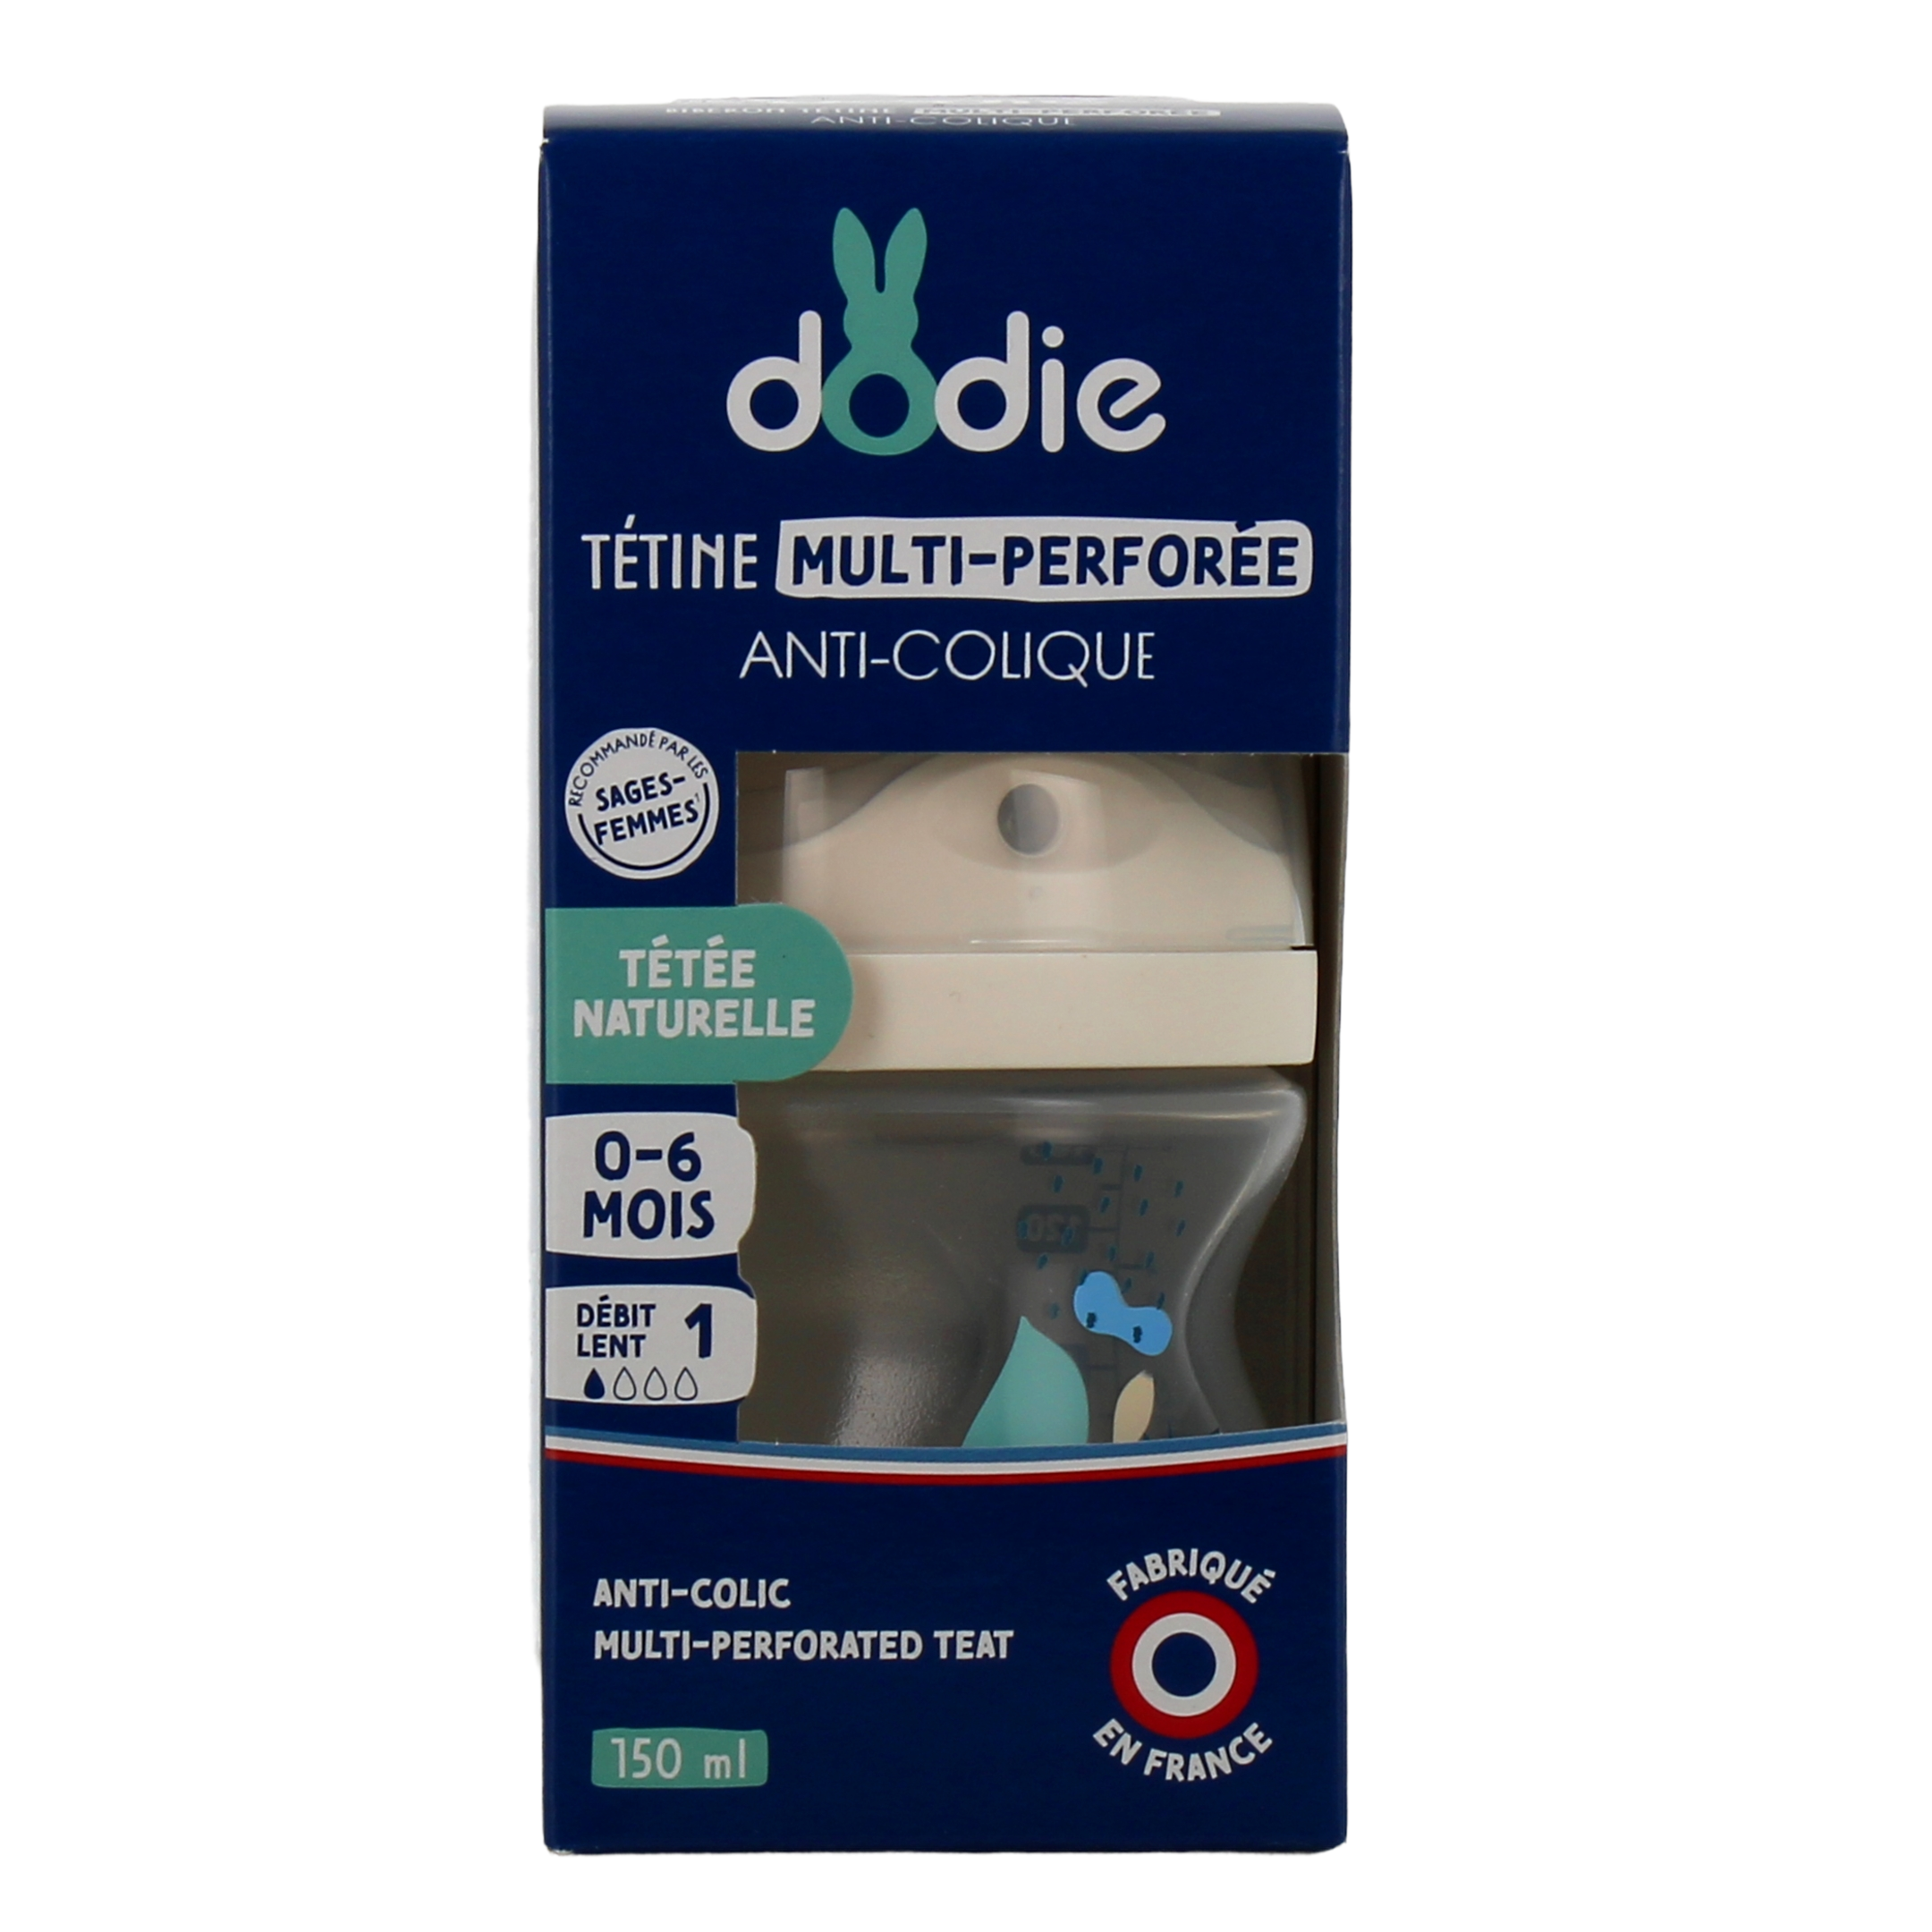 Dodie - Biberon anti-colique tétine ronde 3 vitesses 0-6 mois débit 1 -  biberon 150ml